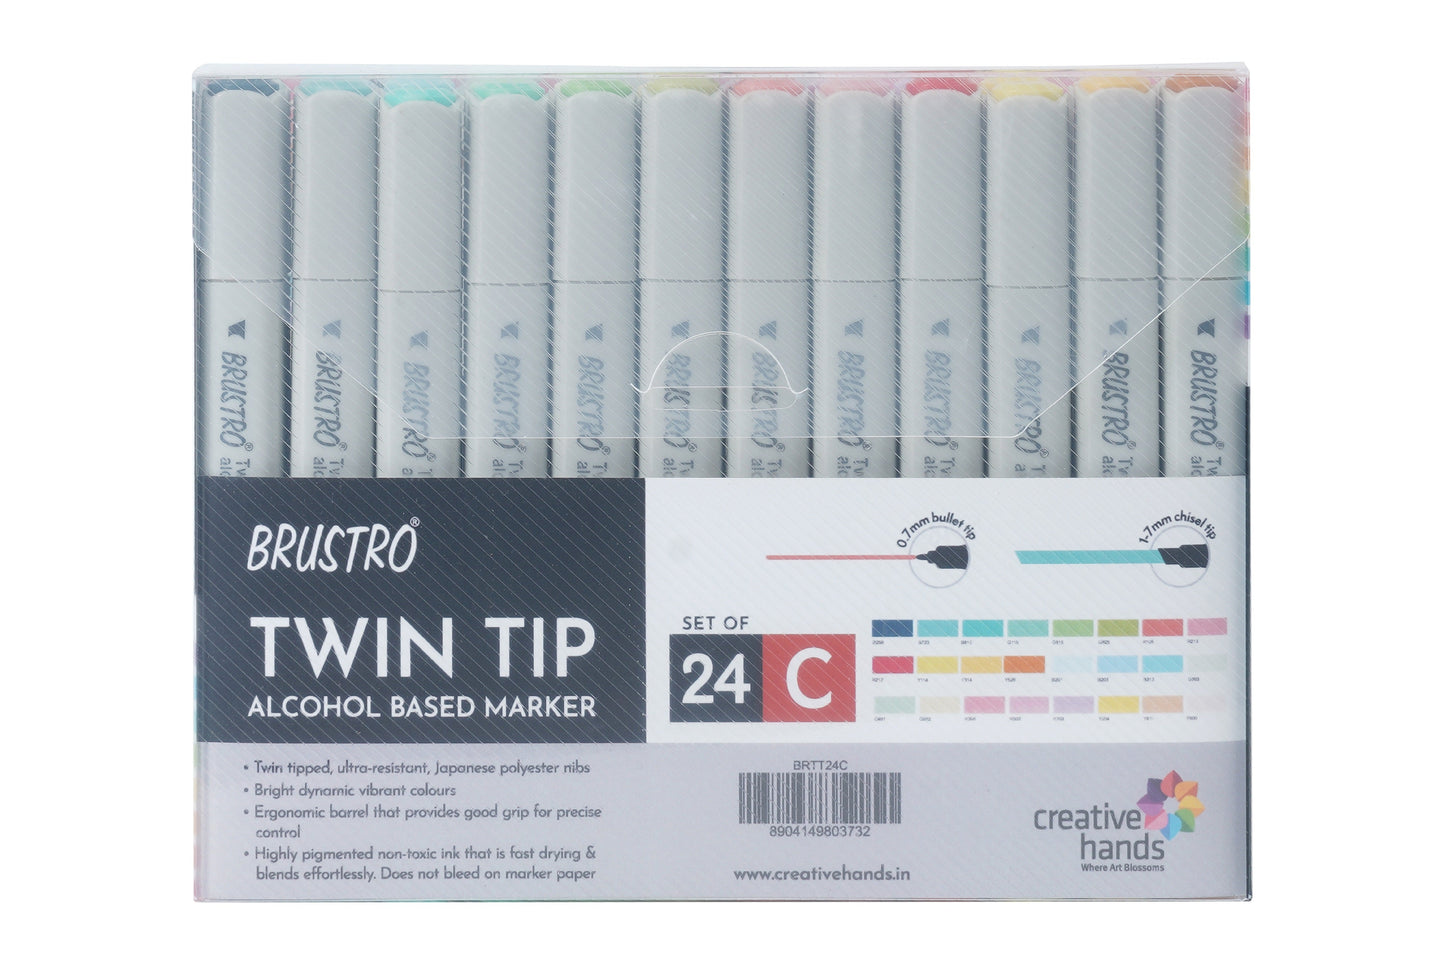 Brustro Twin Tip Alcohol Based Marker Set of 24 (C) in Elegant Marker Wallet